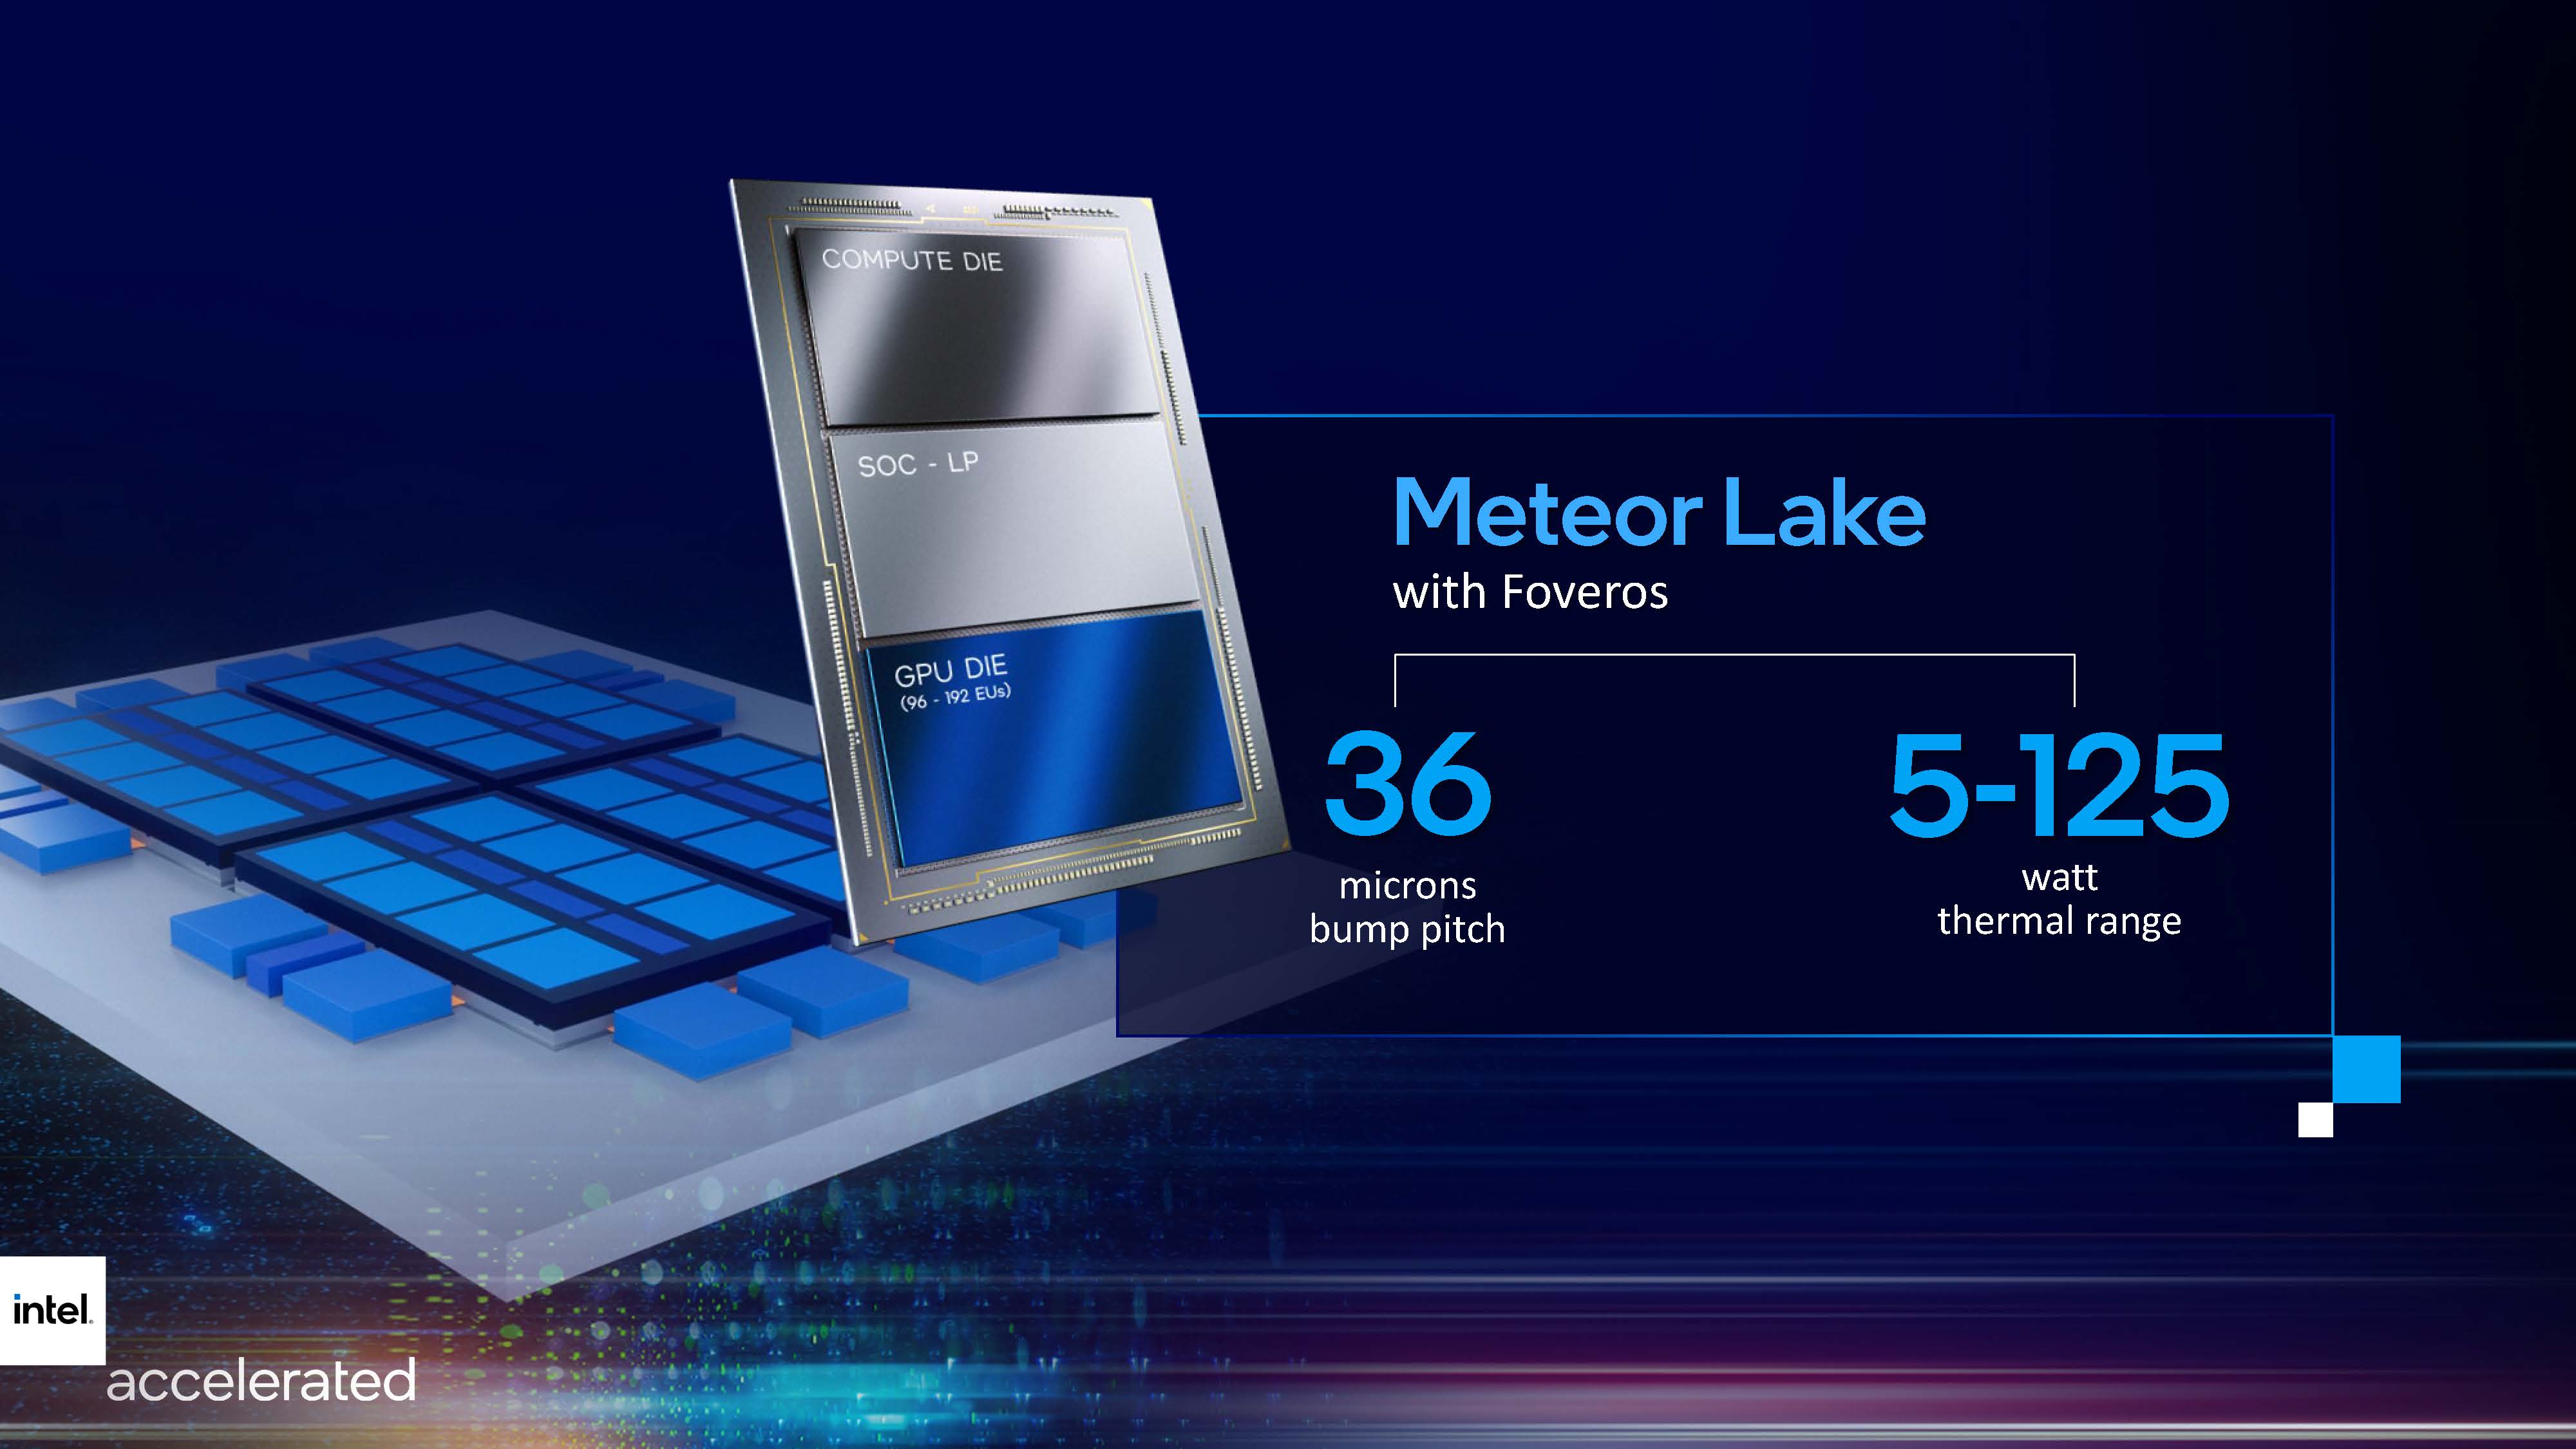 Lago de meteoritos de Intel